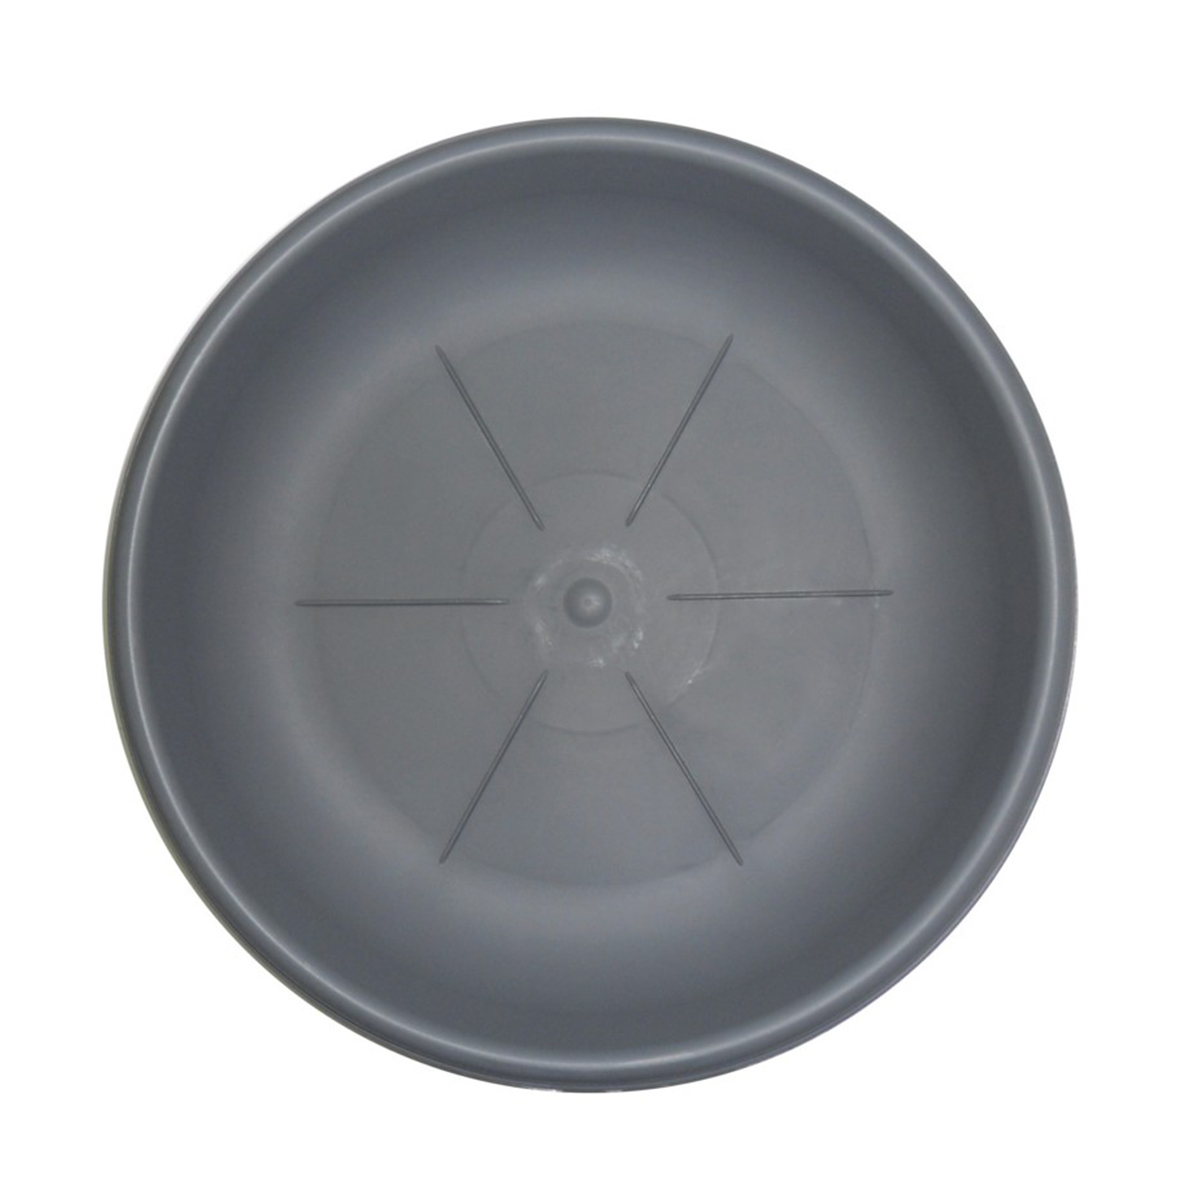 Sottovaso rotondo Bama diametro 26 cm colore grigio